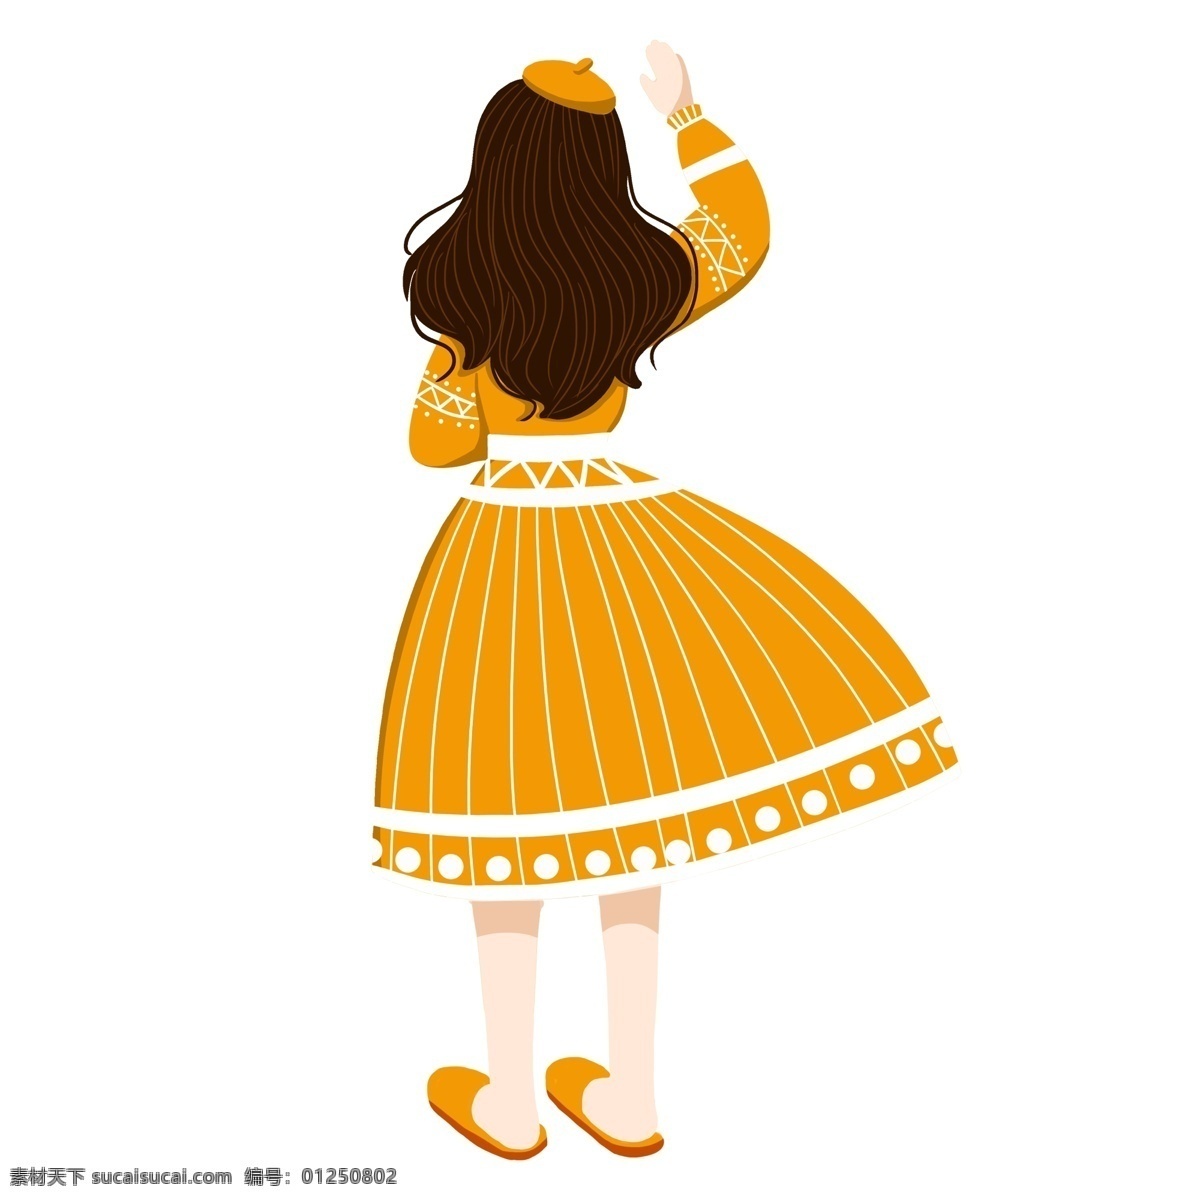 文艺女孩背影 黄色 衣服 人物 女孩 手绘 绘画 卡通 简约 小清新 装饰 彩色